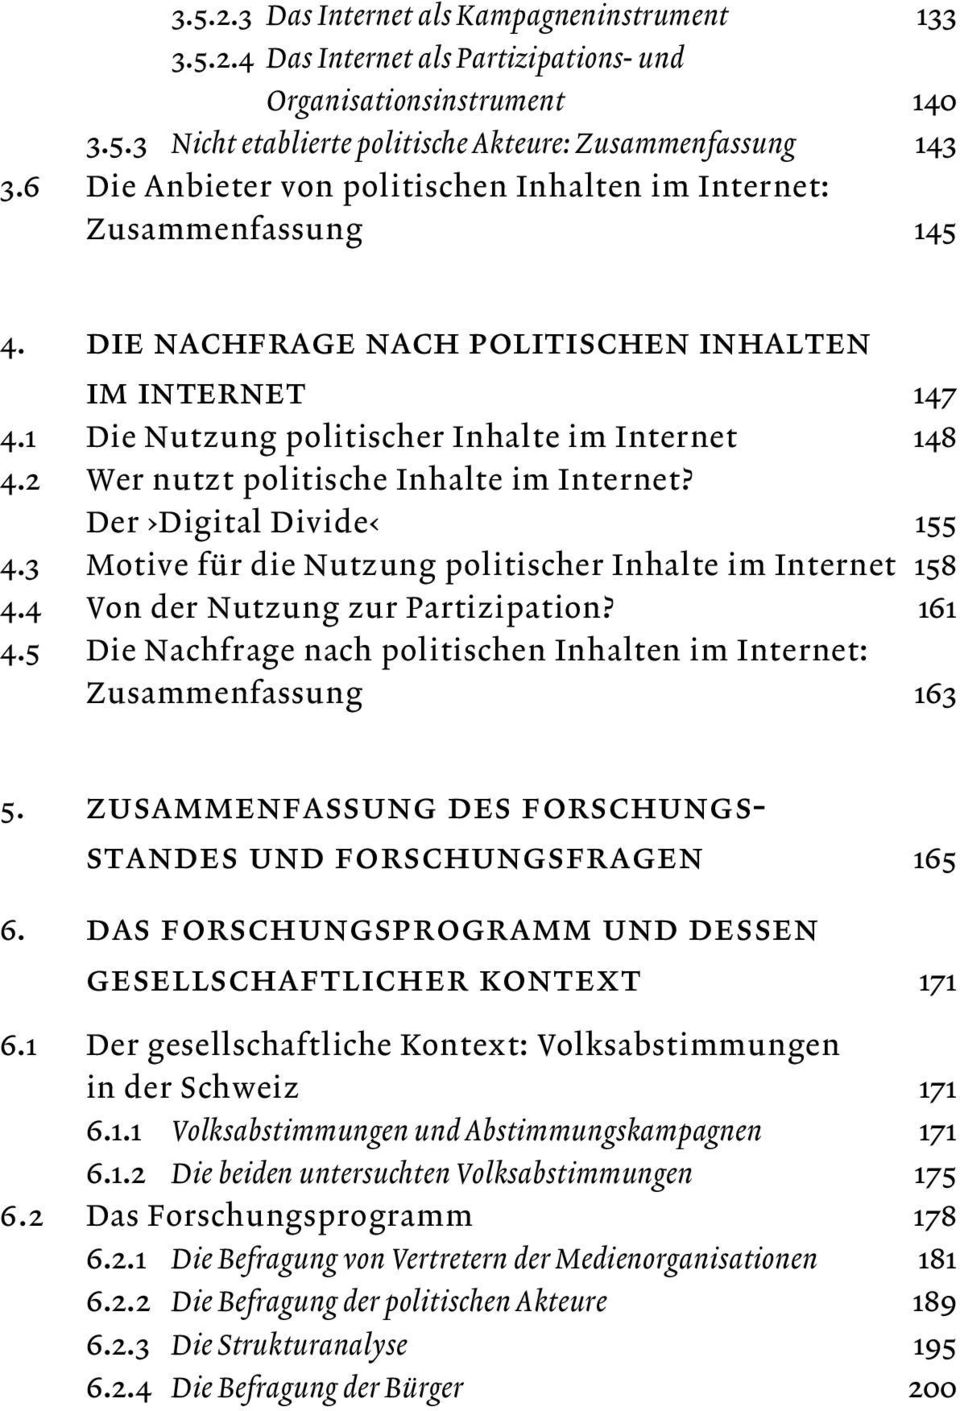 2 Wer nutzt politische Inhalte im Internet? Der Digital Divide 155 4.3 Motive für die Nutzung politischer Inhalte im Internet 158 4.4 Von der Nutzung zur Partizipation? 161 4.